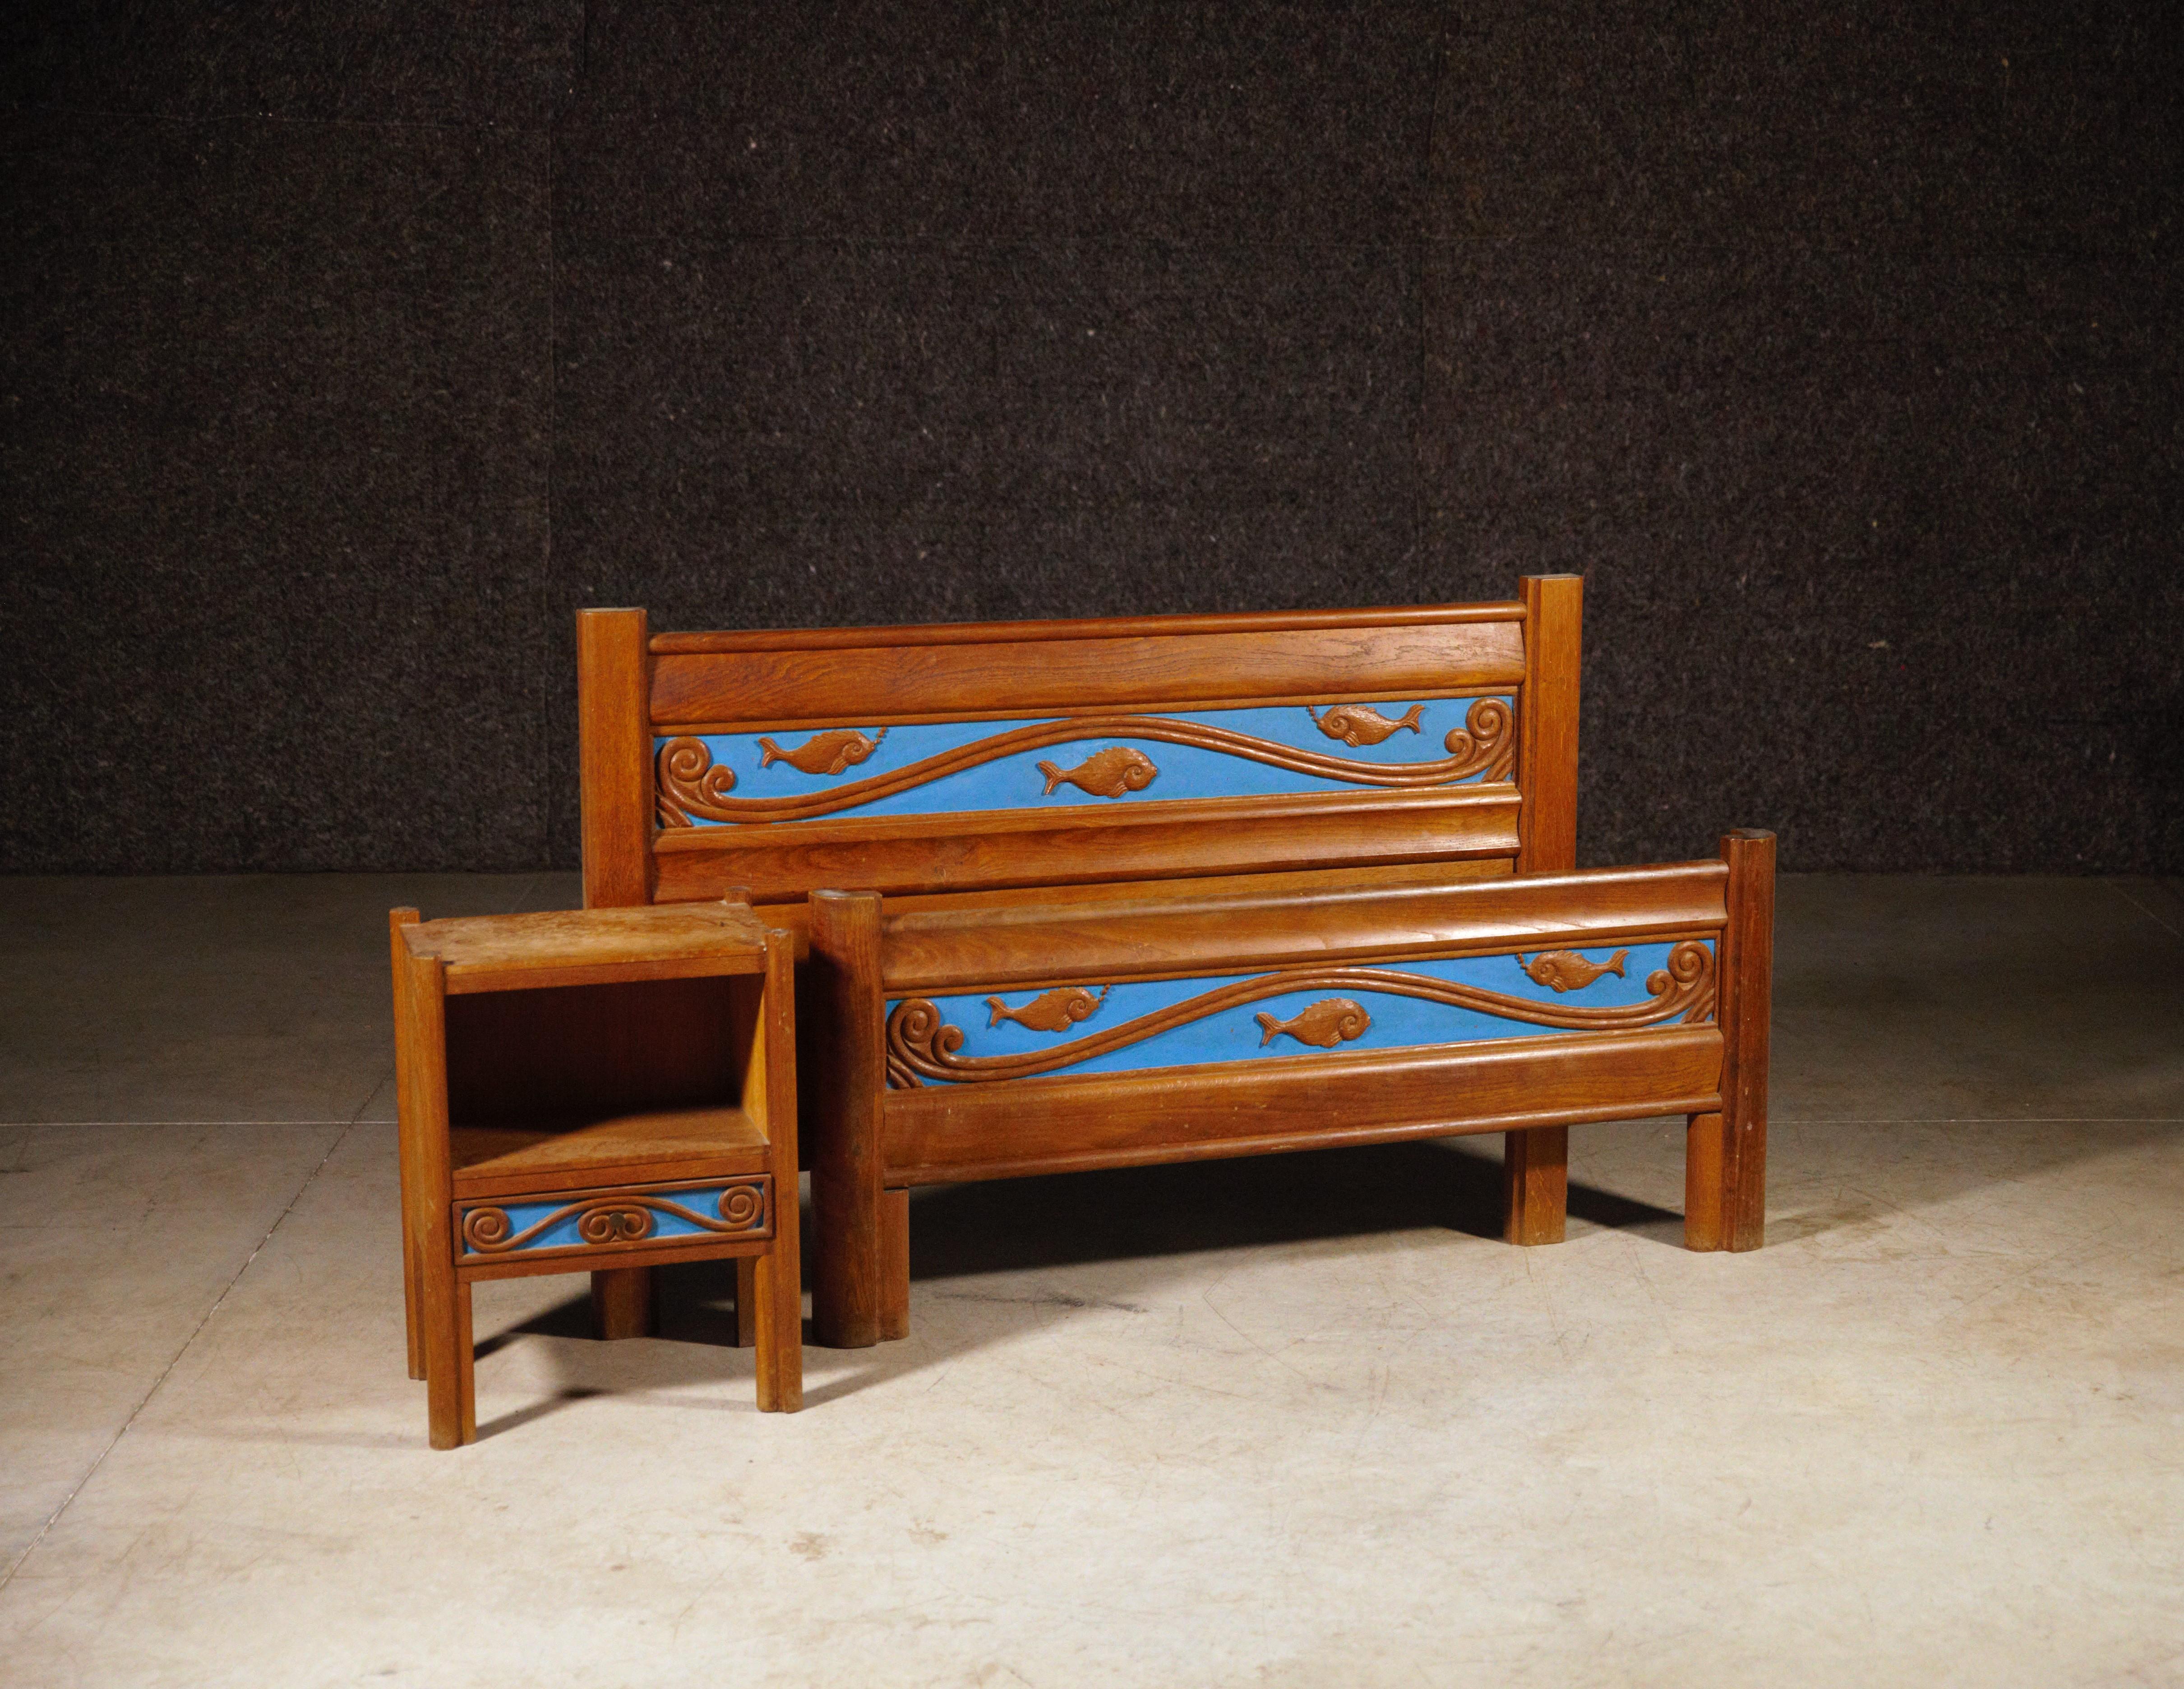 Ein Marin-Themenbett und sein Nachttisch von Joseph Savina.

Aus geschnitzter Eiche und lackiert.

Ursprünglicher Zustand.

Seltenes Modell.